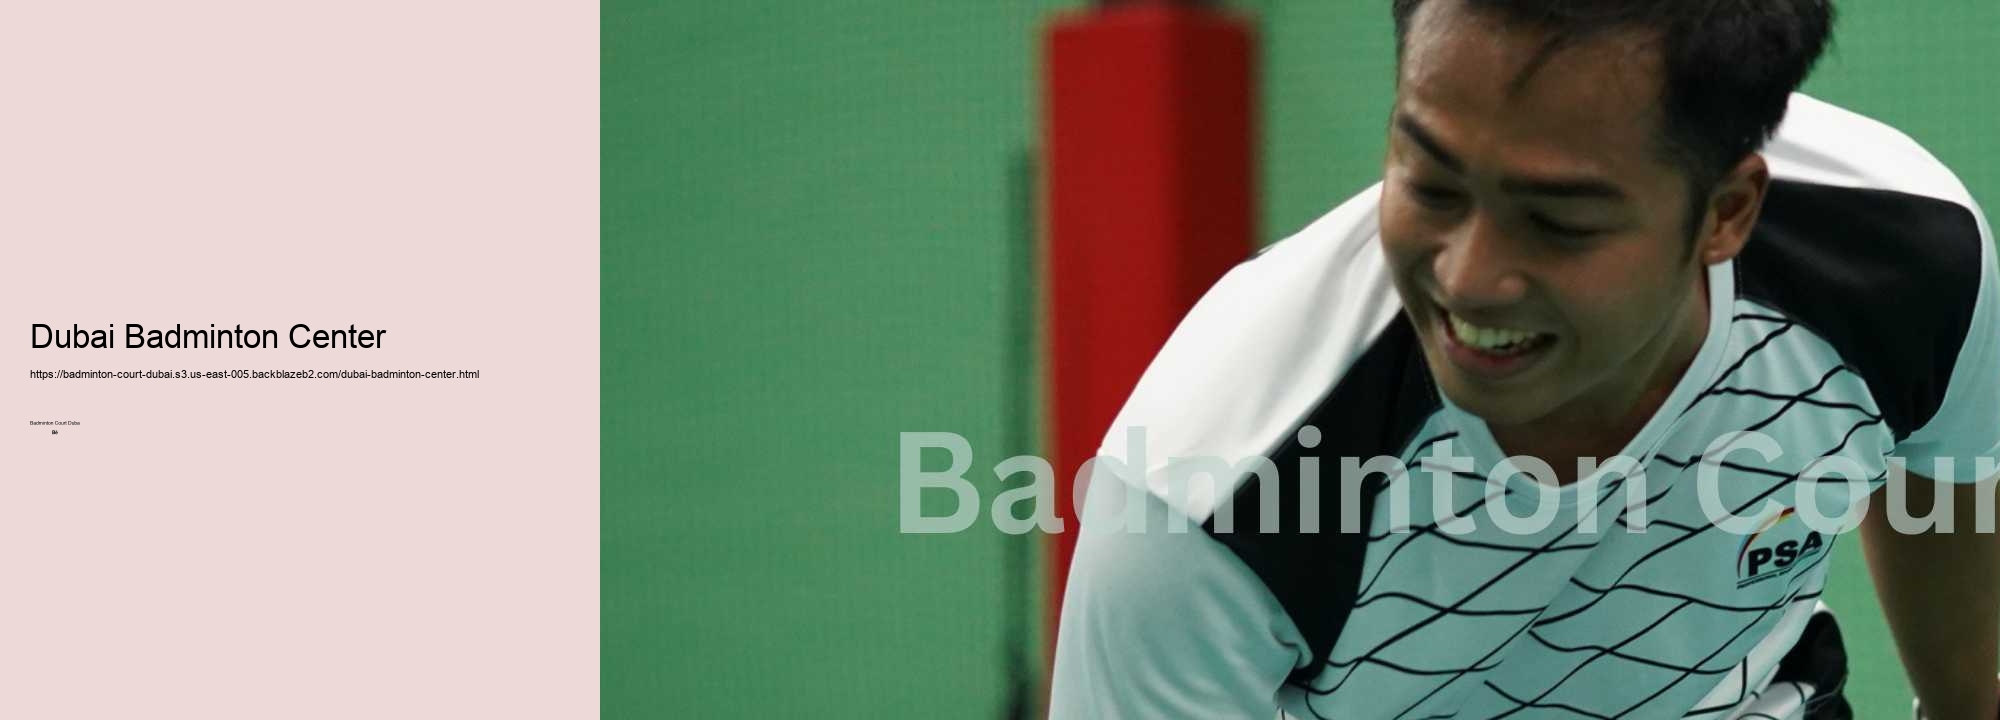 Dubai Badminton Center